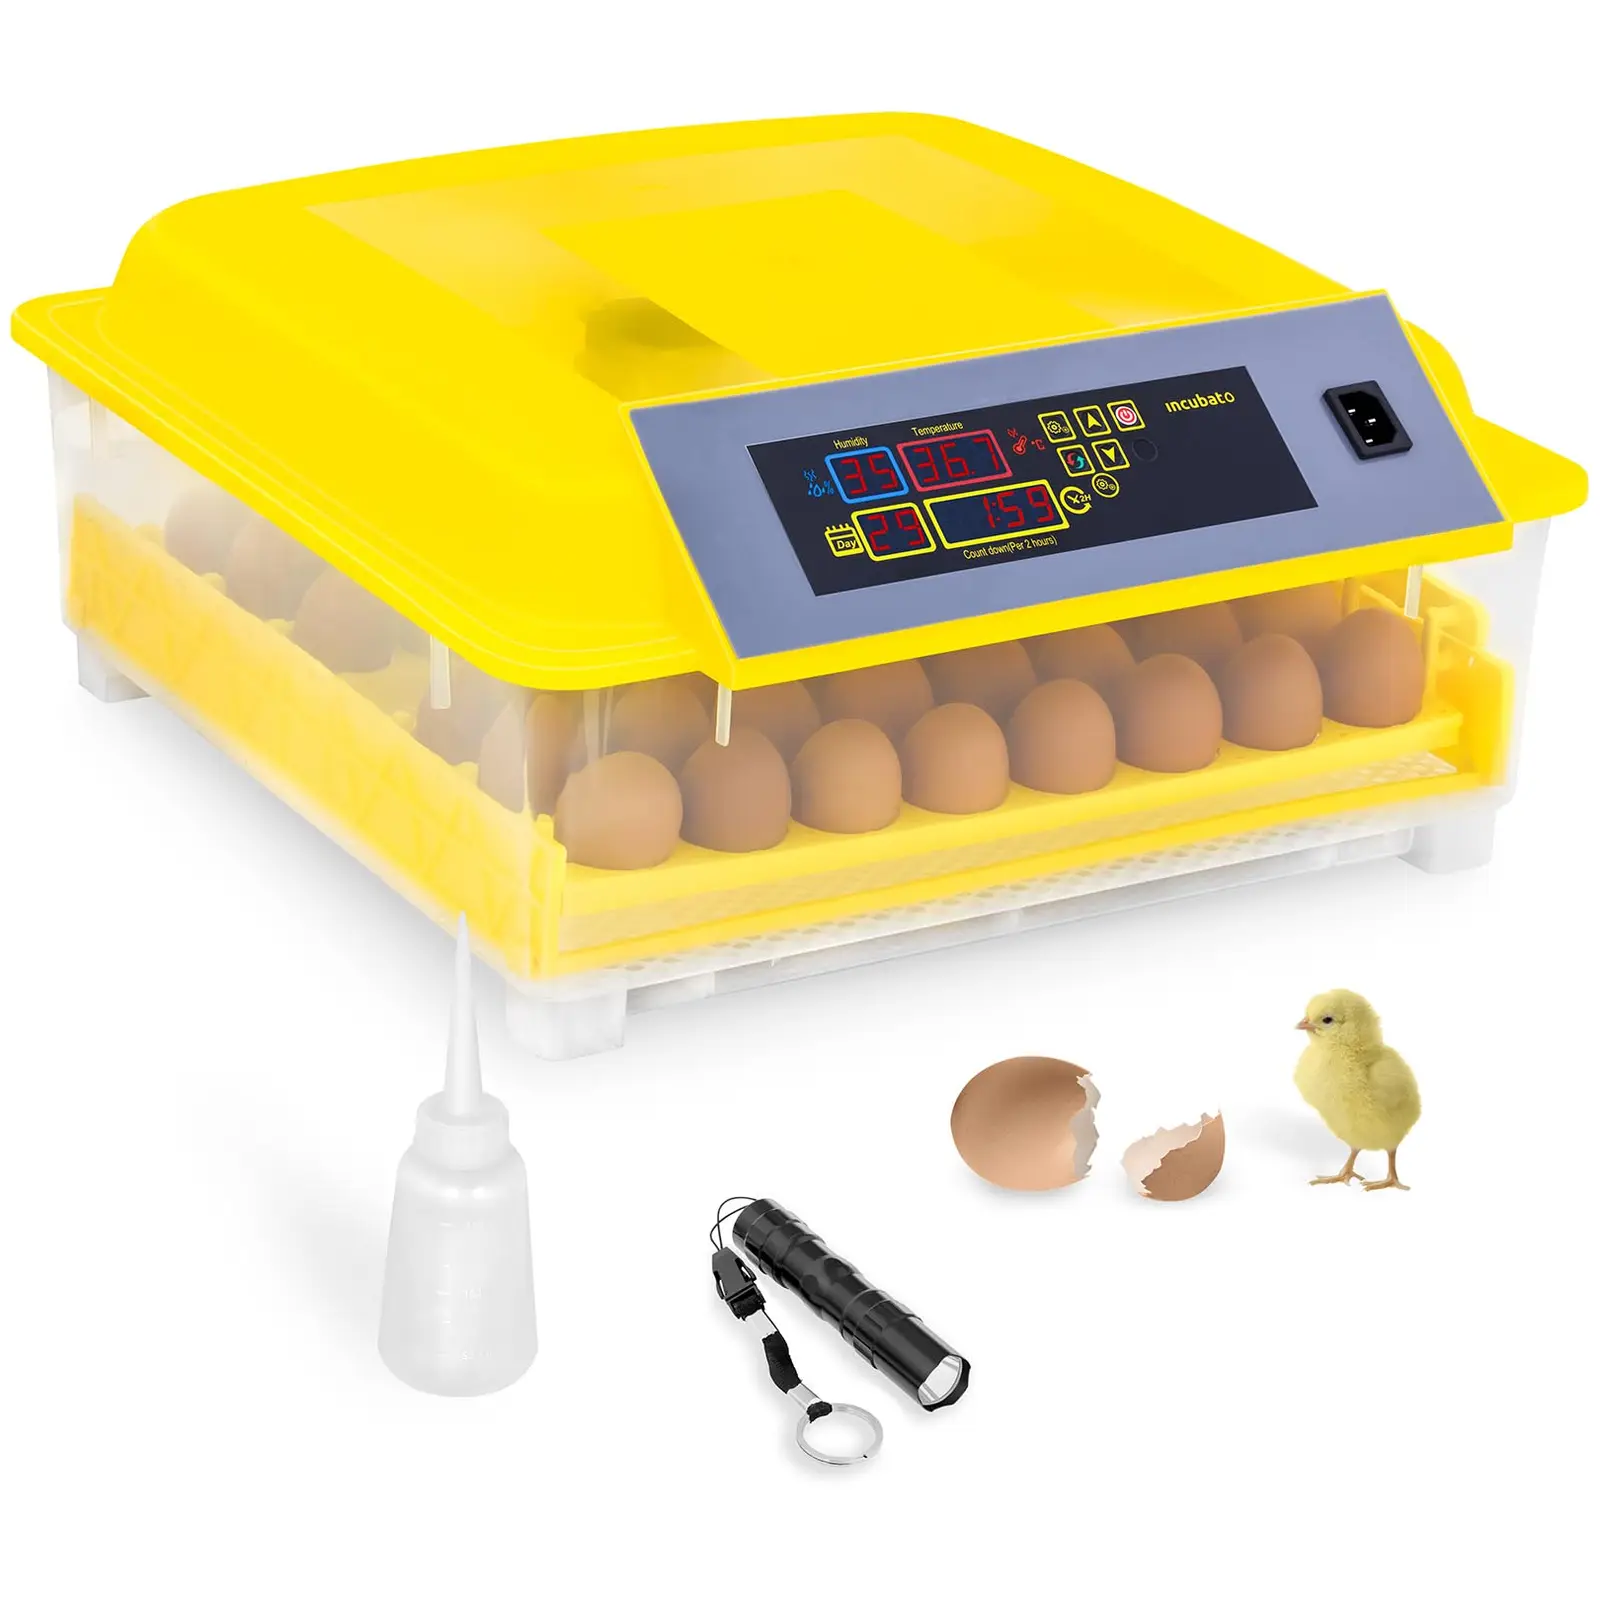 Couveuse à œufs - 48 œufs - Mire-œuf et distributeur d'eau inclus - Entièrement automatique